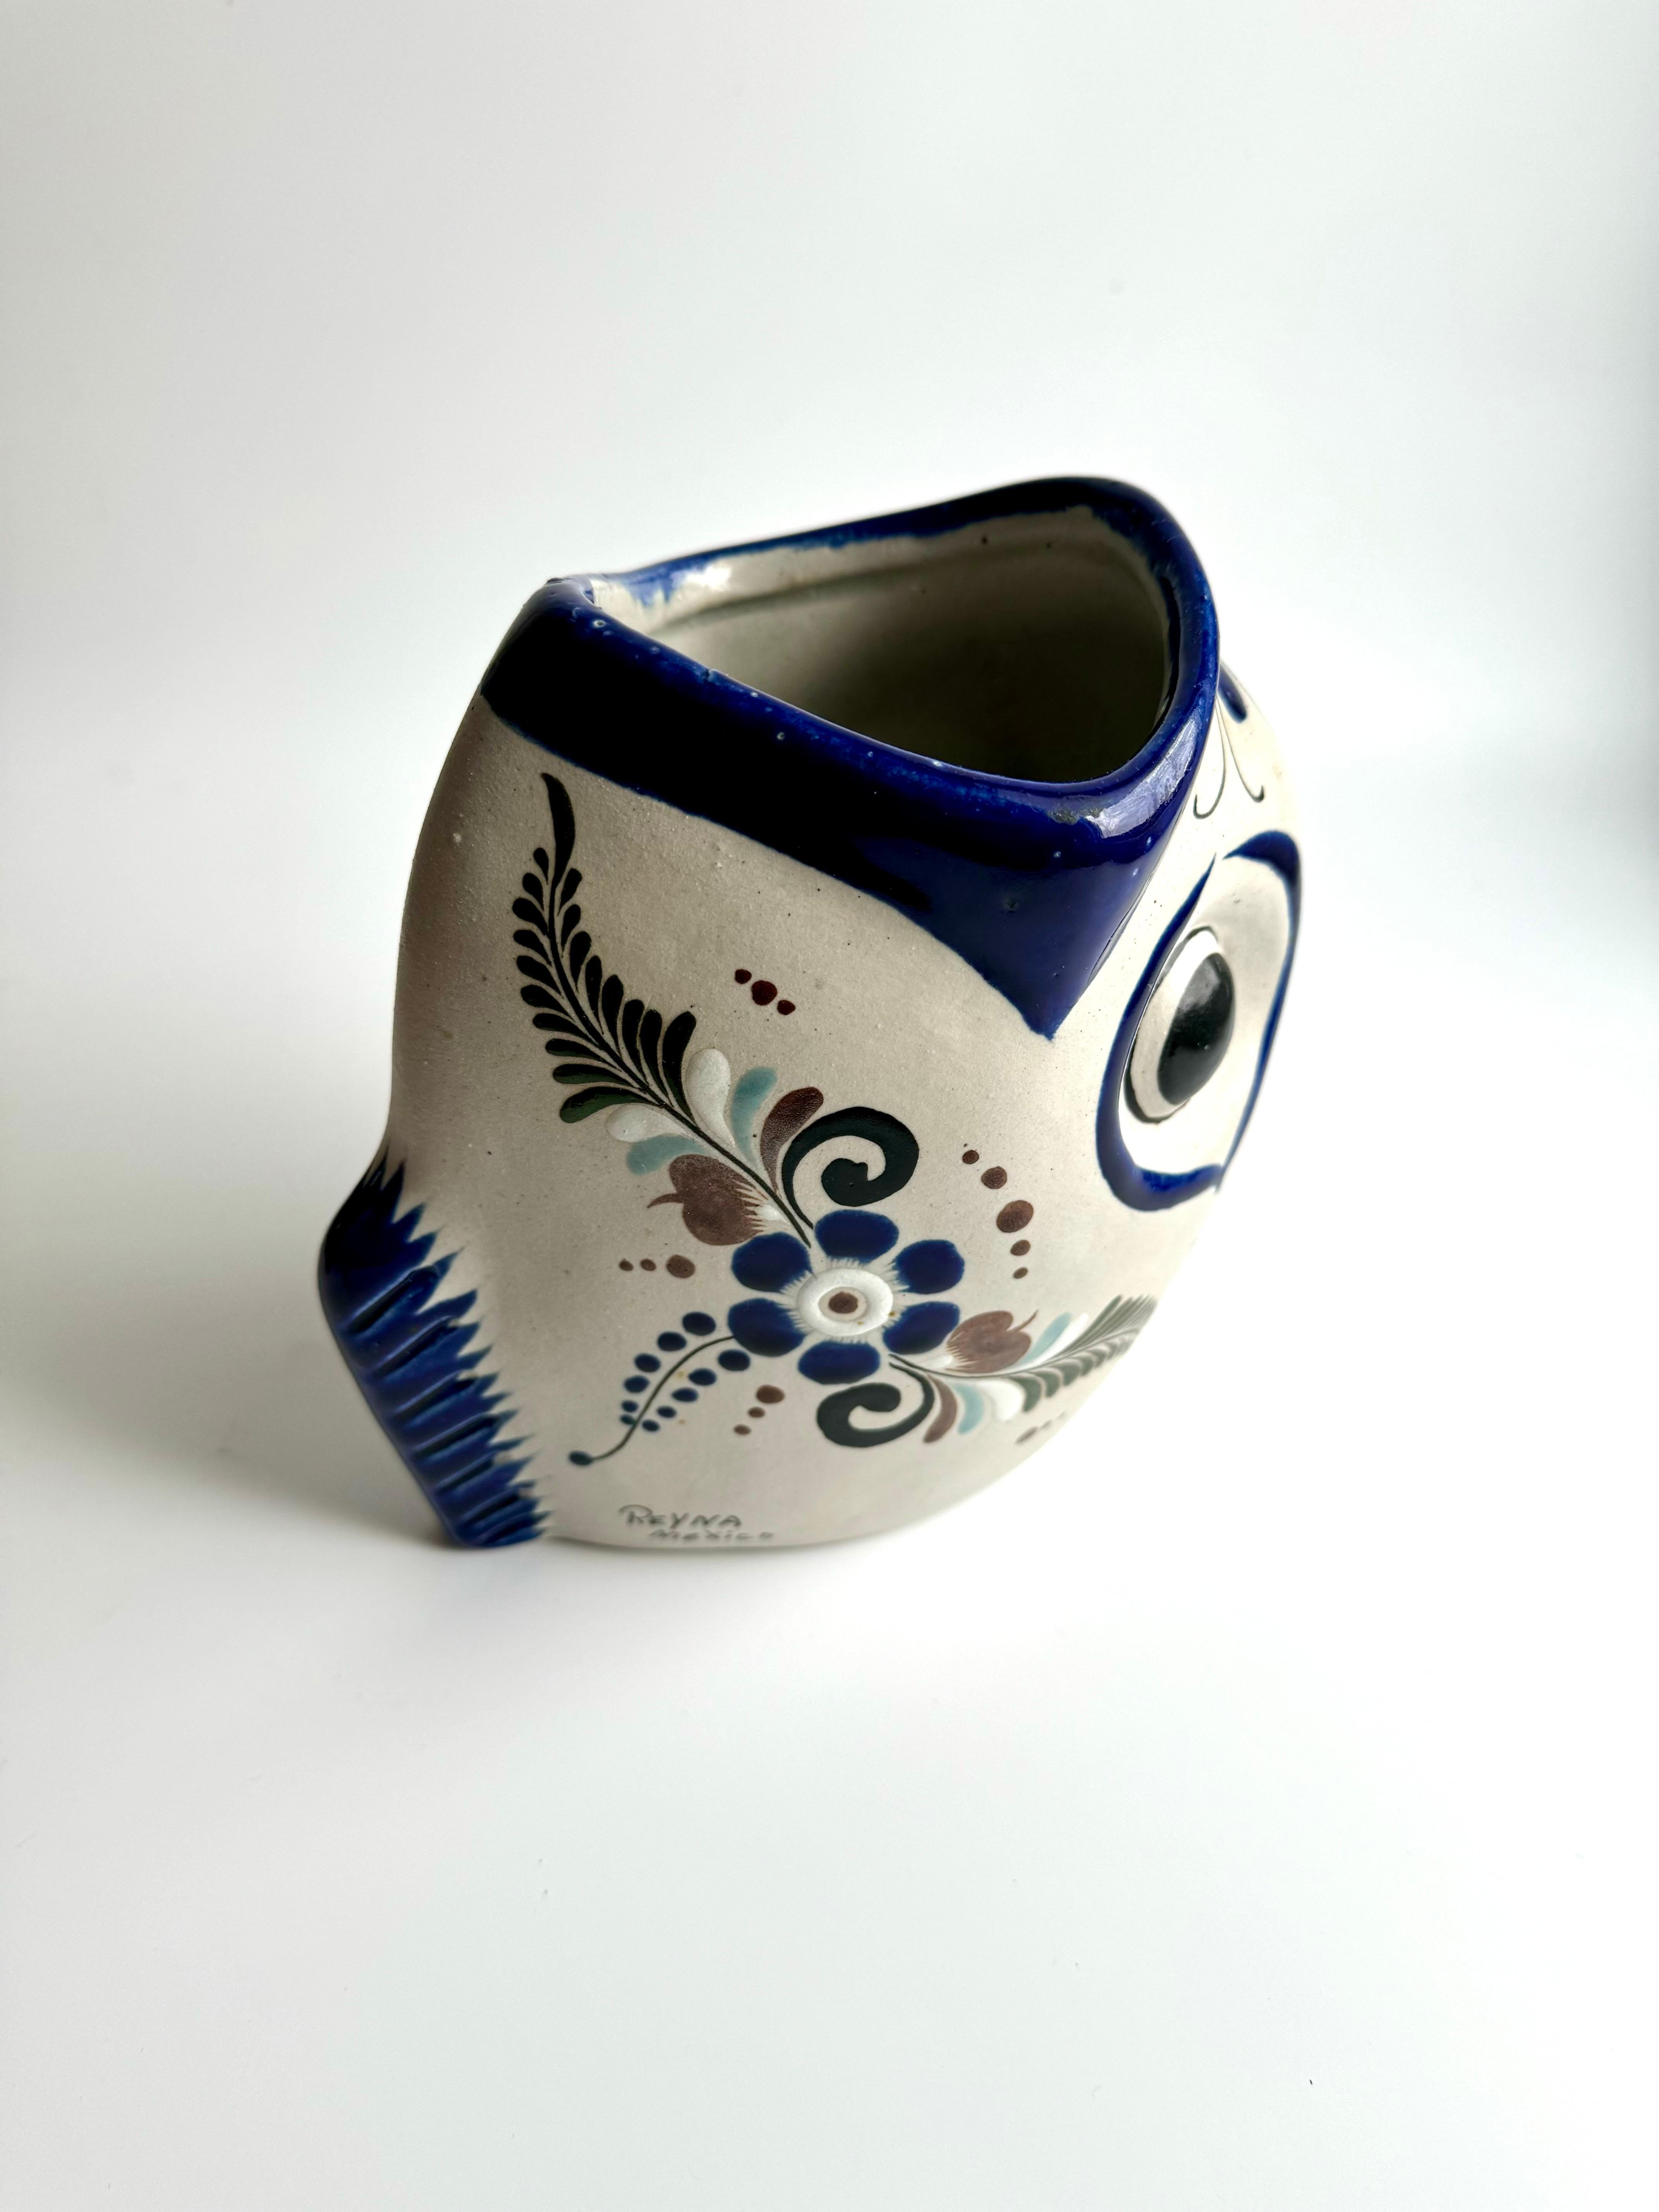 Seltene volkstümliche Keramikvase aus der Stadt Tonalá in Mexiko, geformt in Form eines Fisches, der mit weit geöffnetem Maul auf einem Schwanz steht. Übertriebene Gesichtszüge, handbemalt in Kobaltblau, machen diese Vase zu einem einzigartigen und